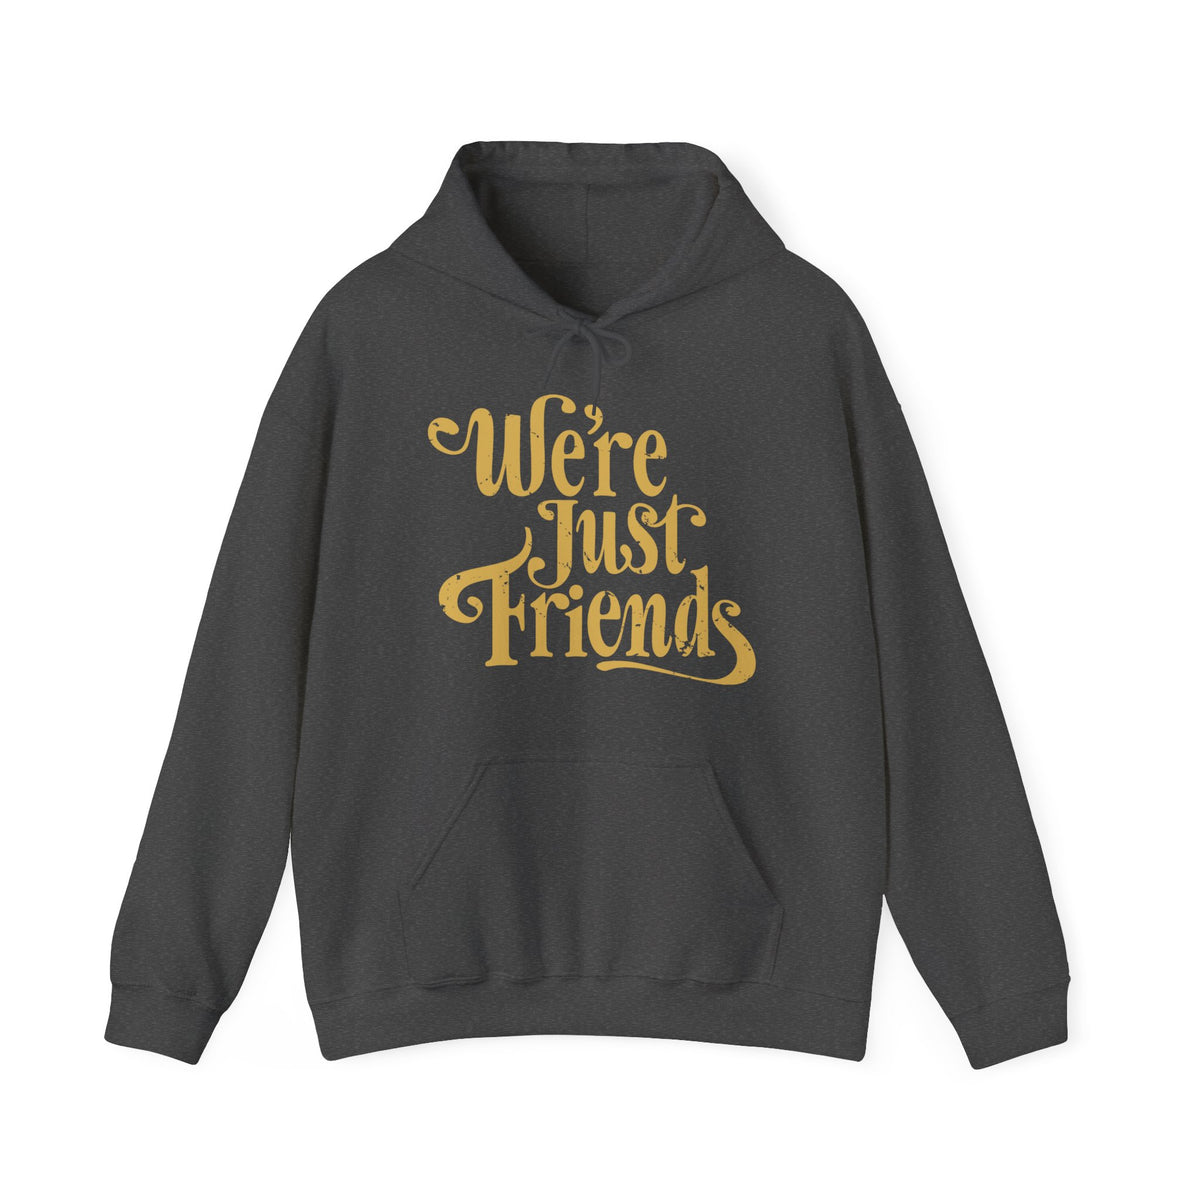 We're Just Friends - Hoodie